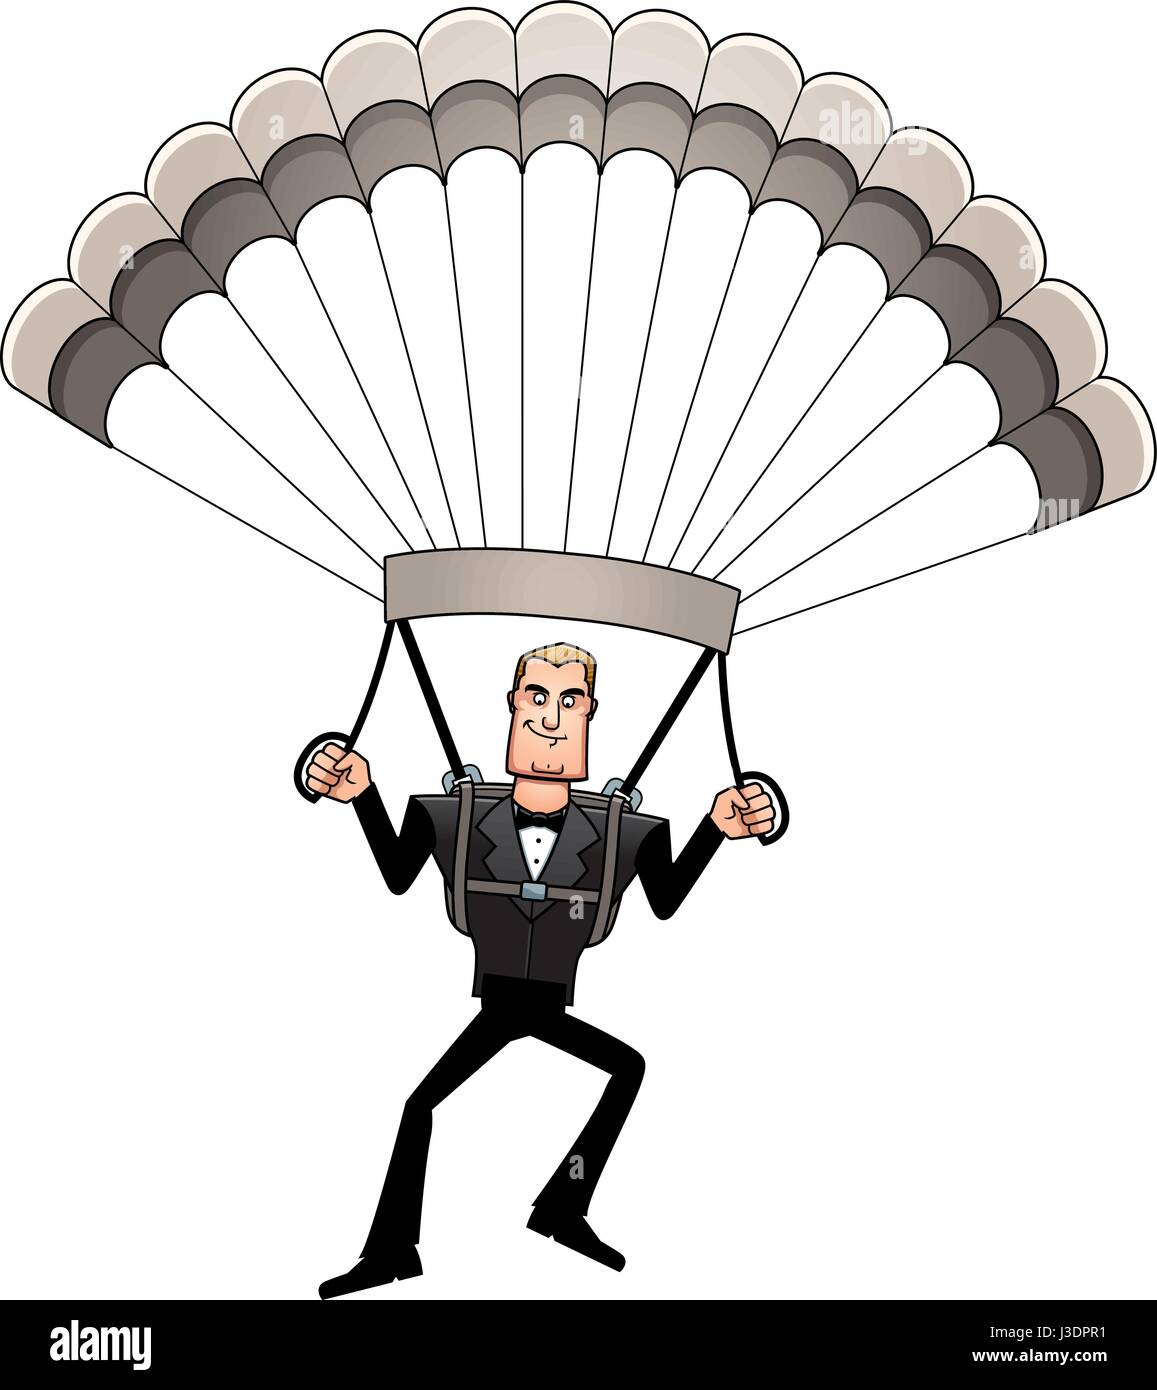 A cartoon illustration of a spy in a tuxedo parachuting. Stock Vector